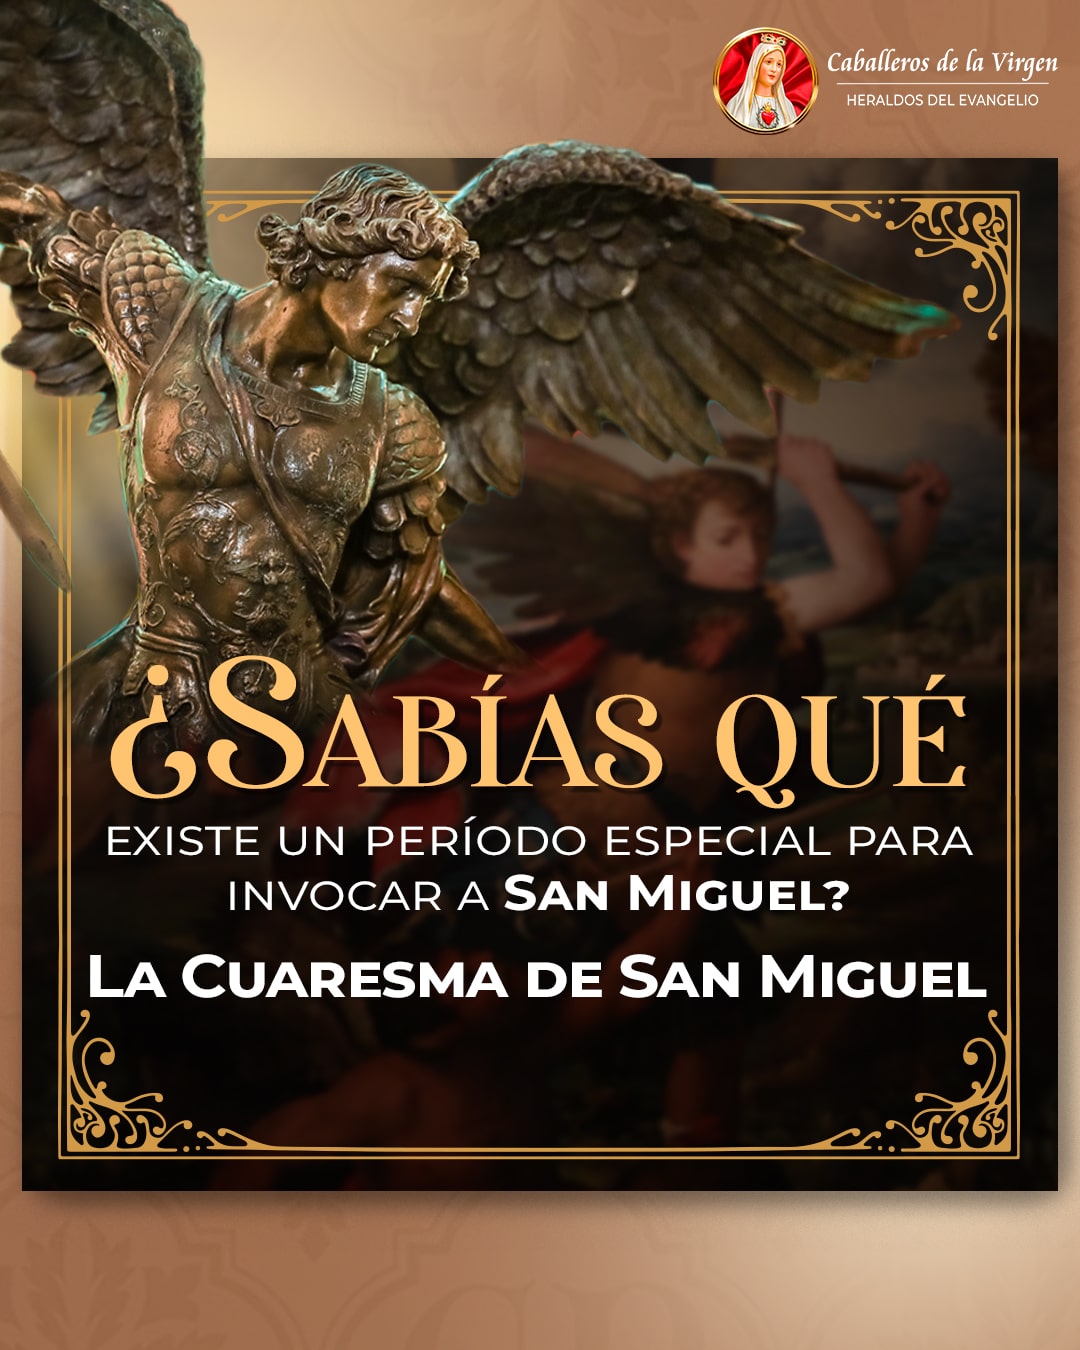 Cuaresma de San Miguel (7)